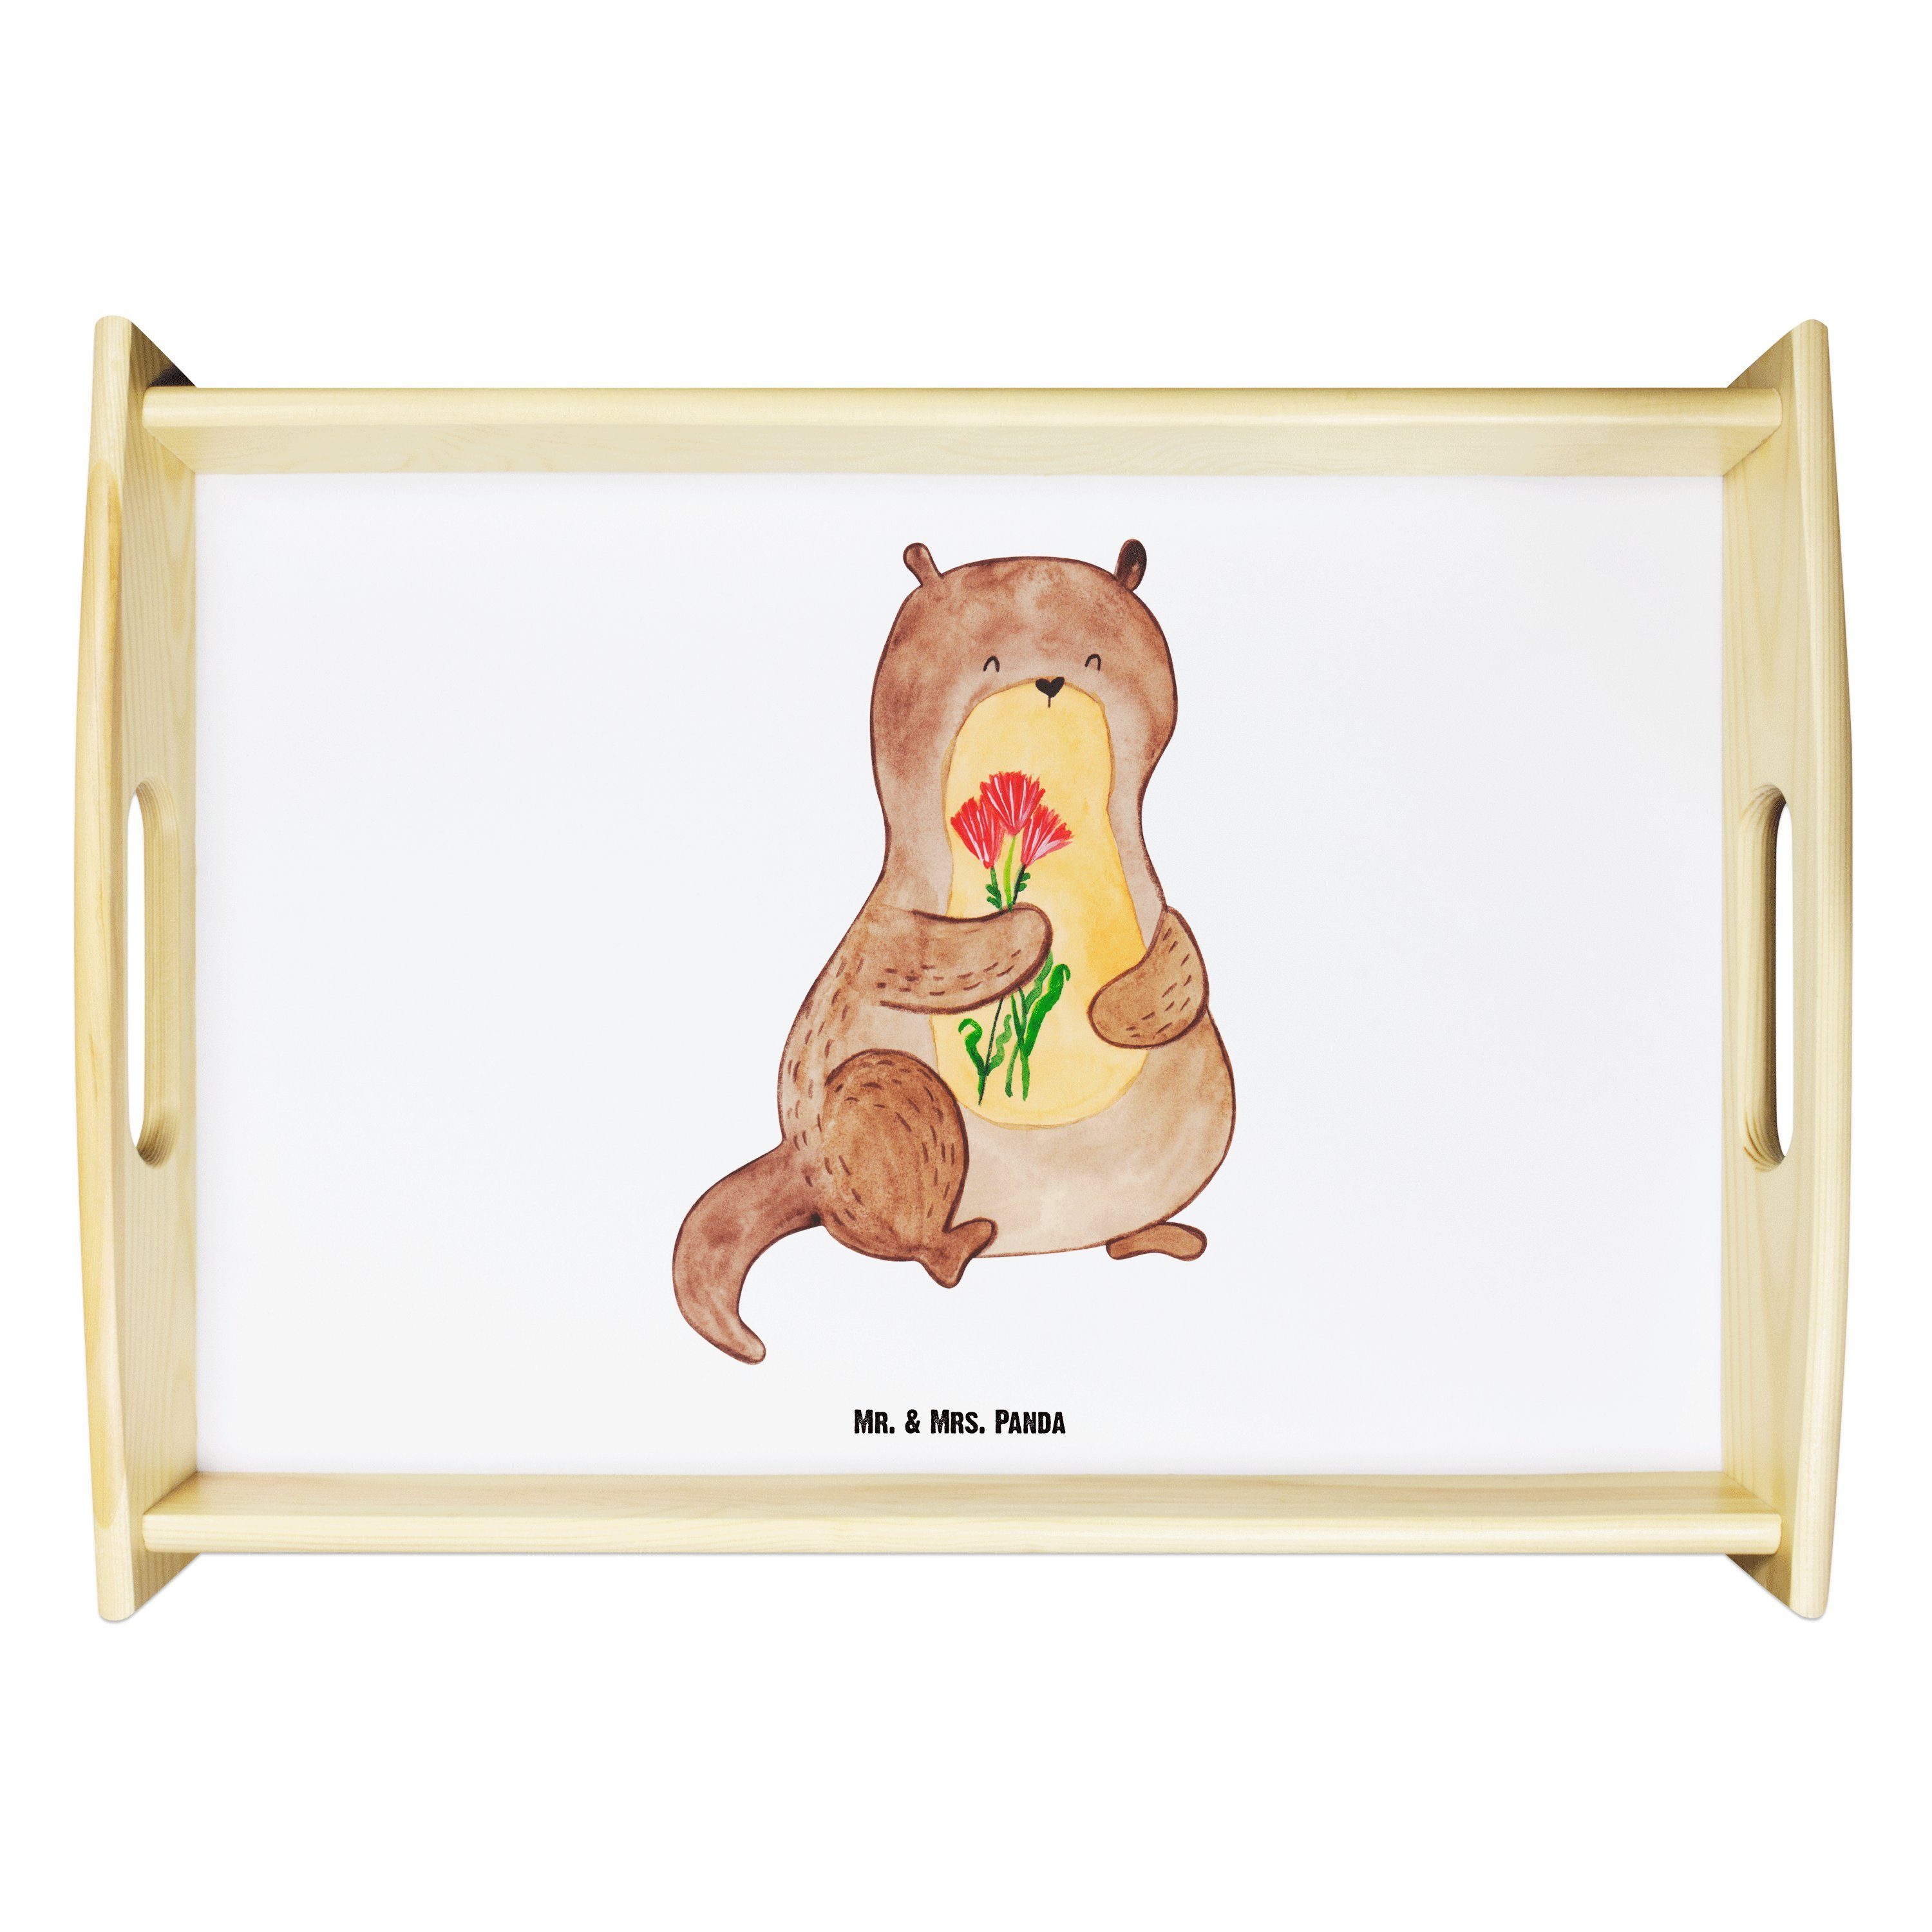 Mr. & Mrs. Panda Tablett Otter Blumenstrauß - Weiß - Geschenk, Seeotter, Frühstückstablett, sü, Echtholz lasiert, (1-tlg)